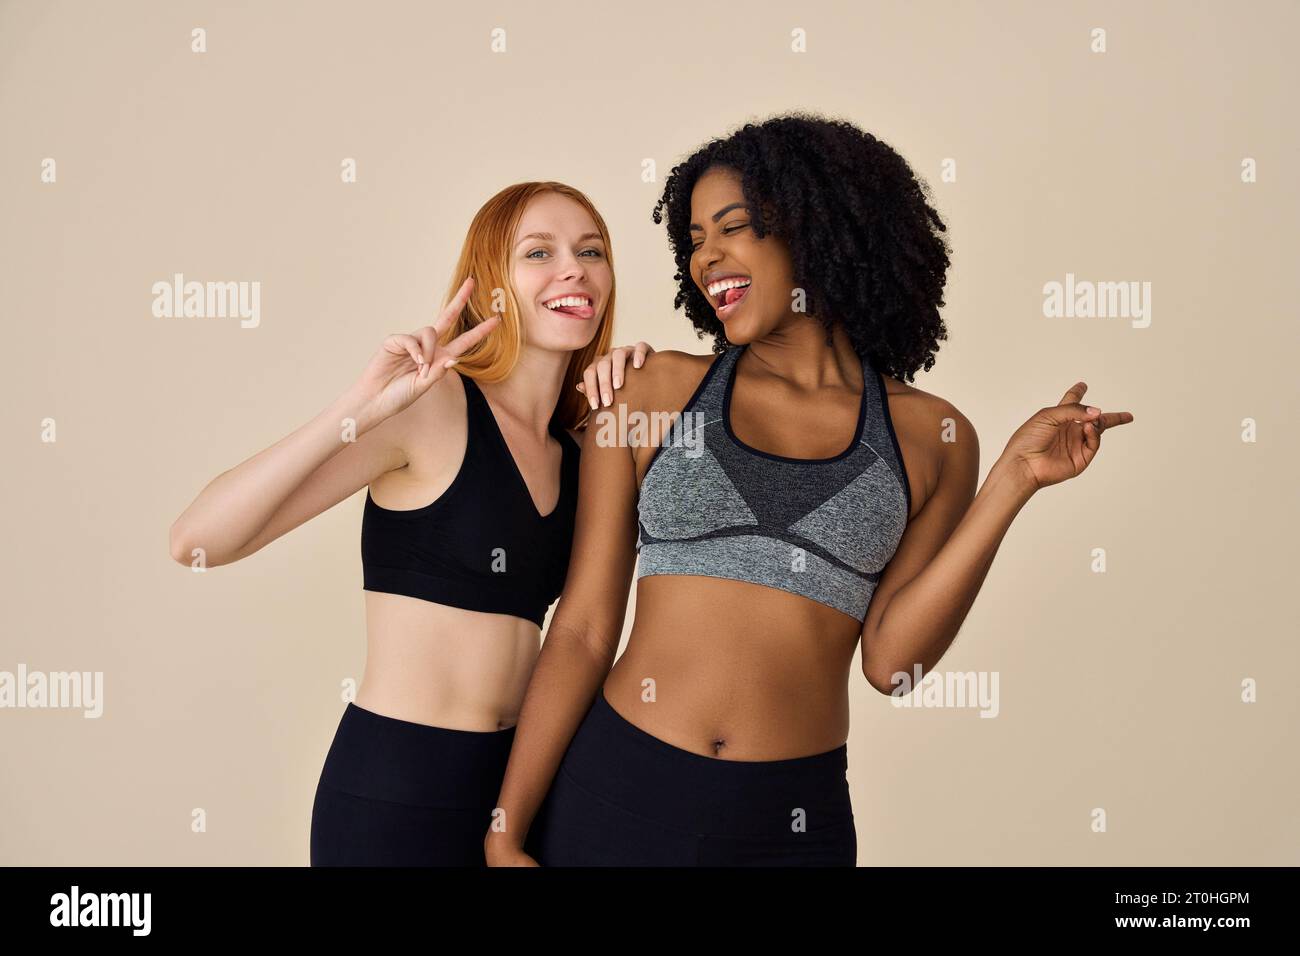 Deux filles heureuses assez diverses portant des vêtements de sport s'amusant sur fond beige. Banque D'Images